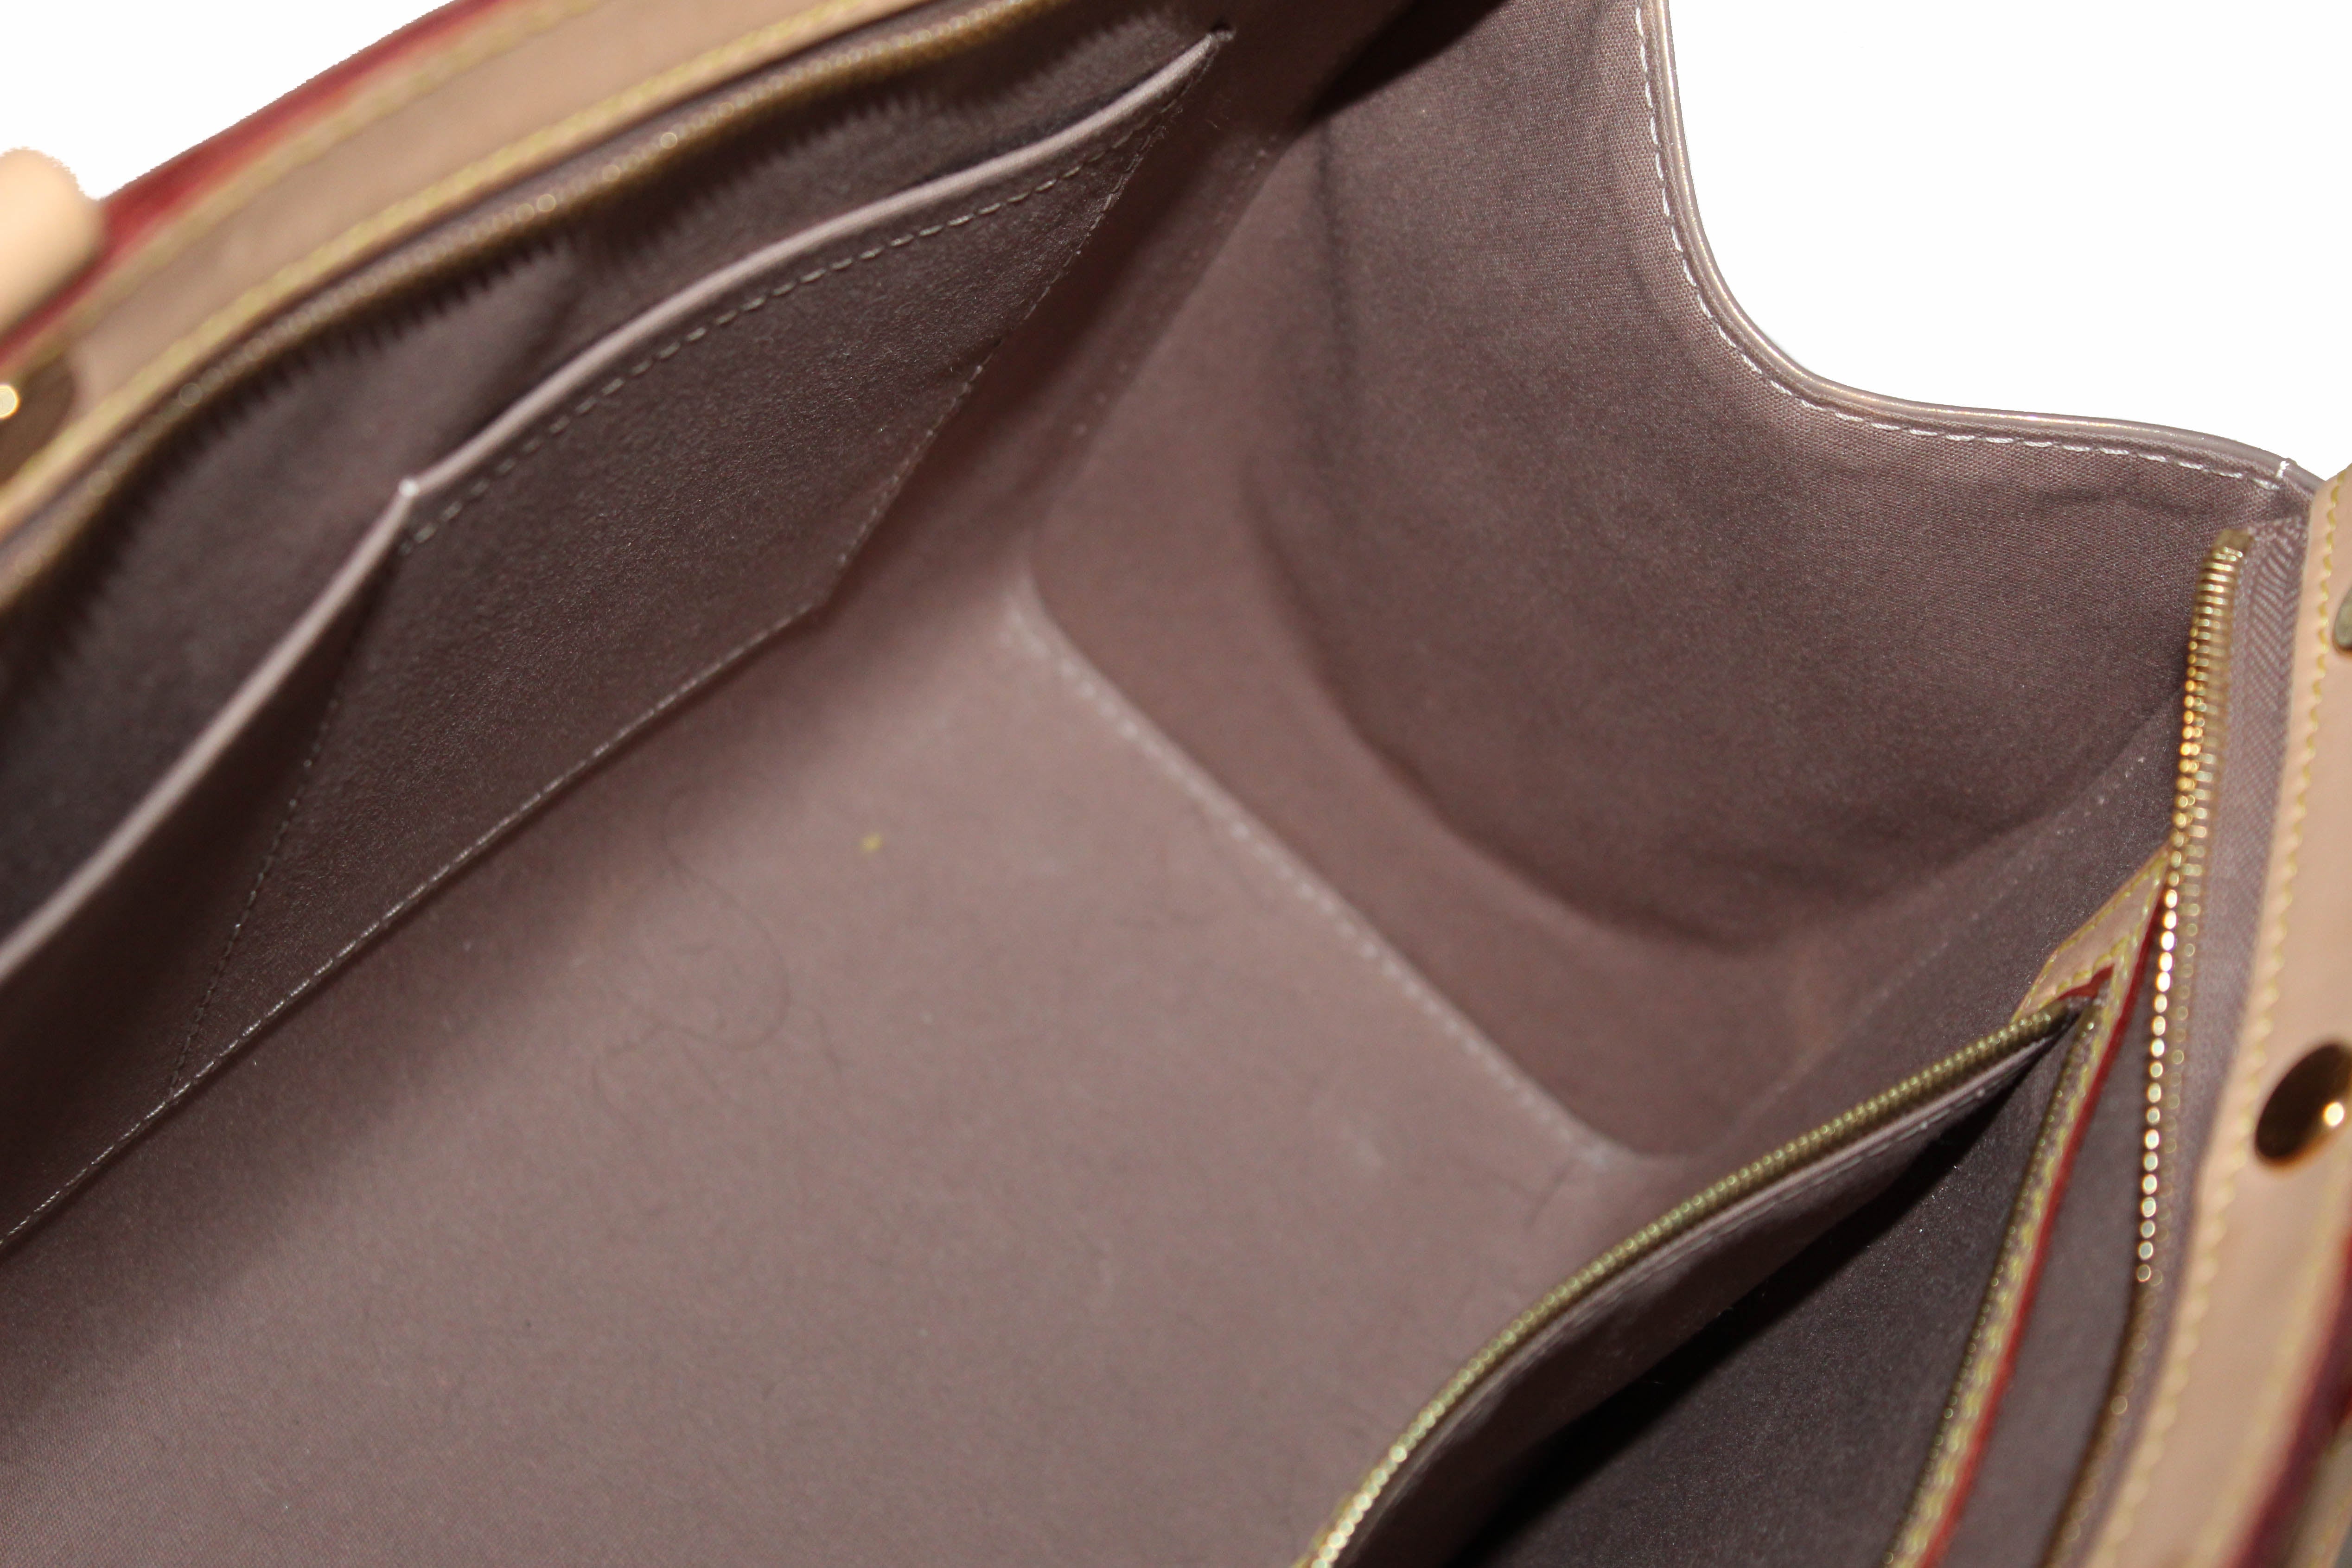 Authentic Louis Vuitton Beige Vernis Leather Brea PM Shoulder Bag